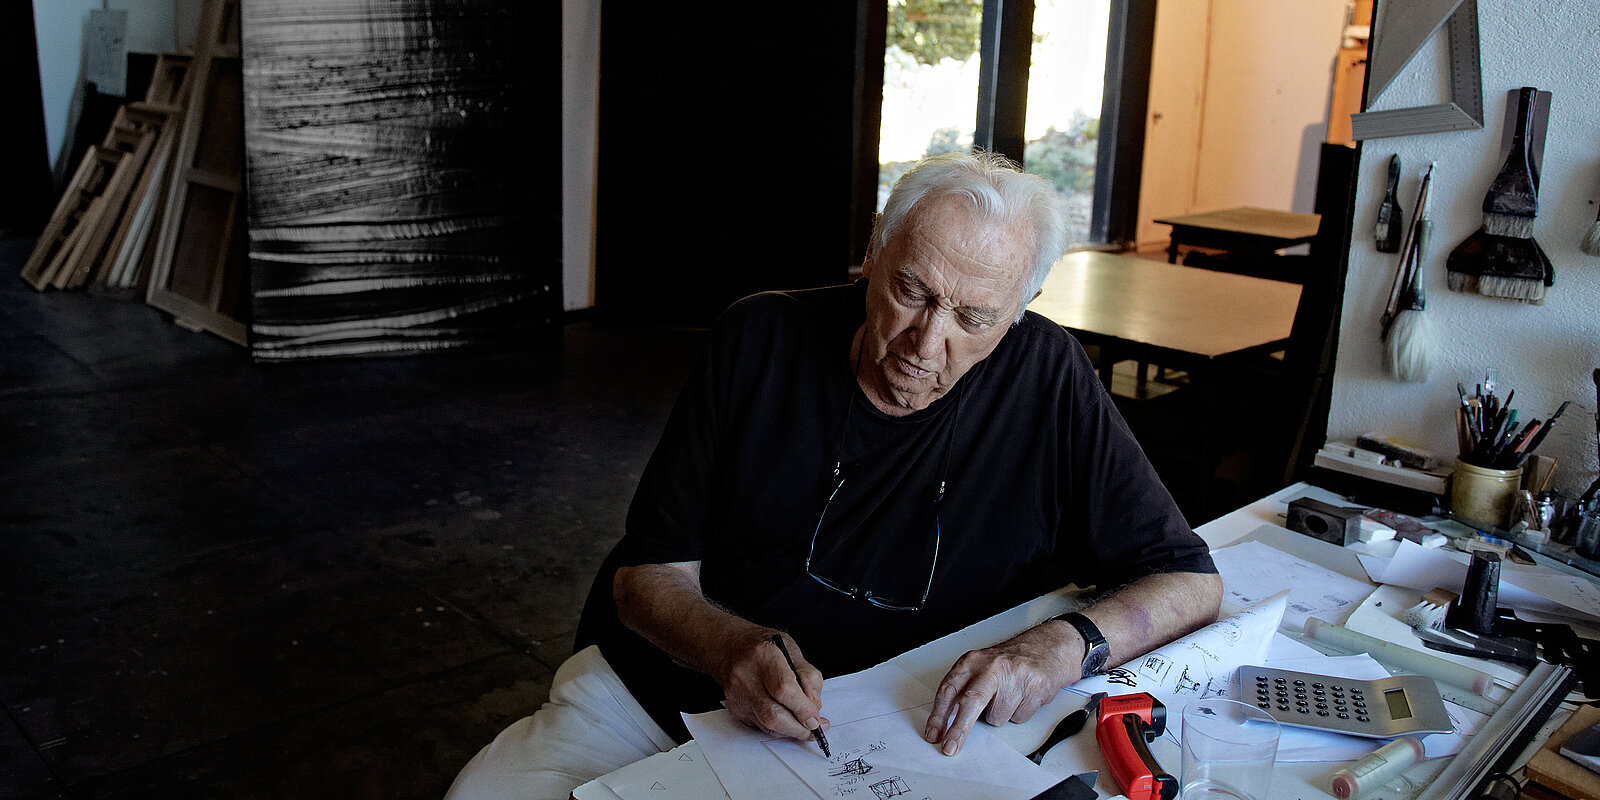 Pierre Soulages in his studio, Paris 2015. Photo: Vincent Cunillère